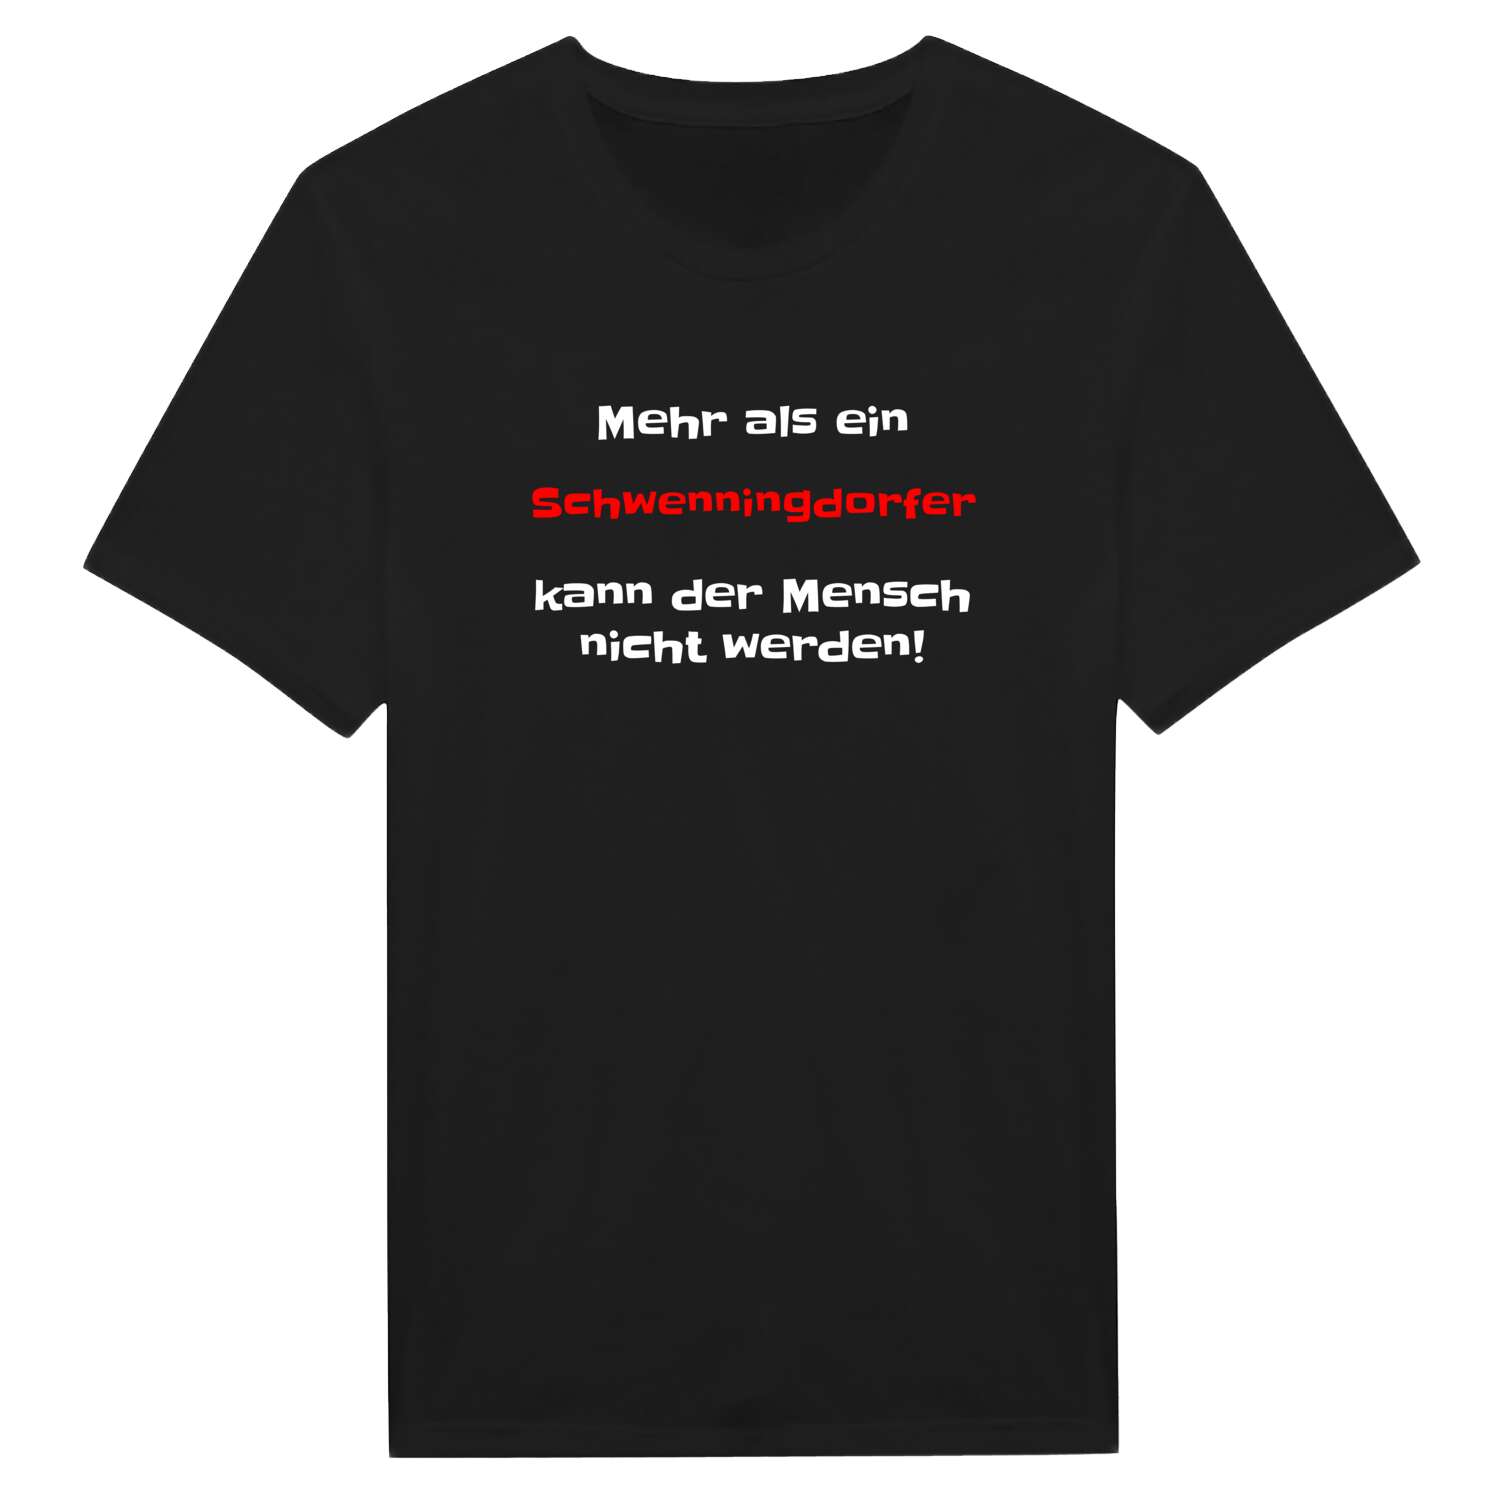 Schwenningdorf T-Shirt »Mehr als ein«